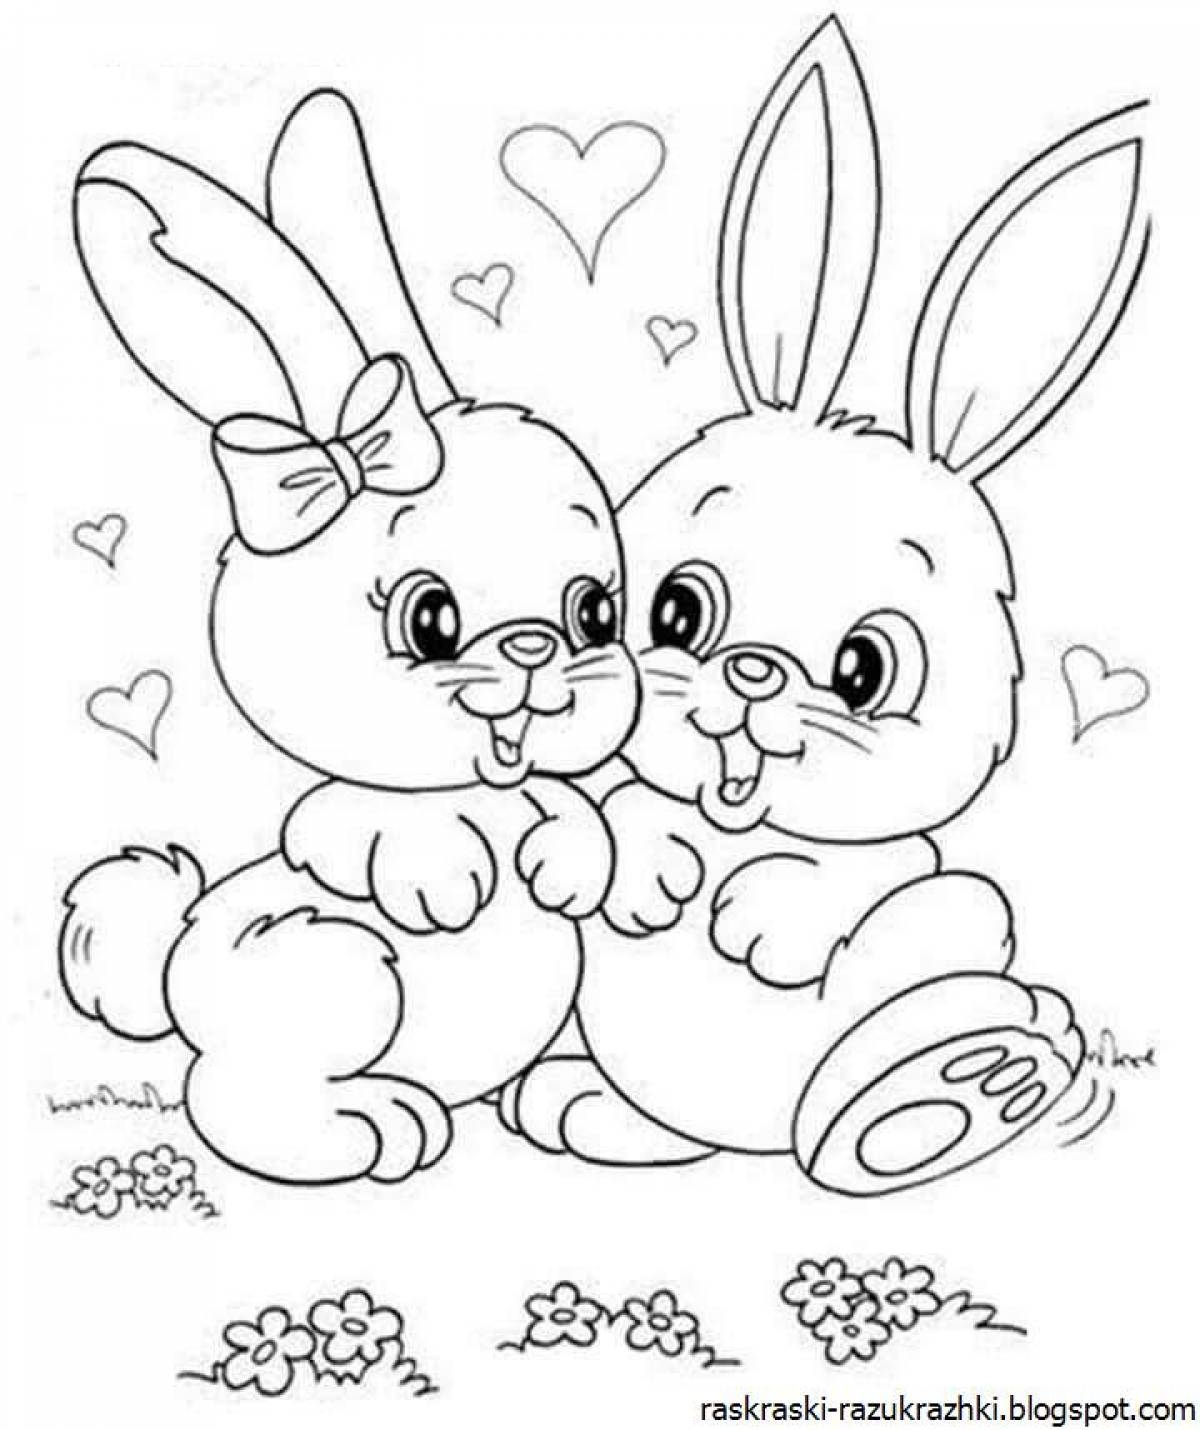 Книжка-раскраска KiddieArt «Лиса и заяц»